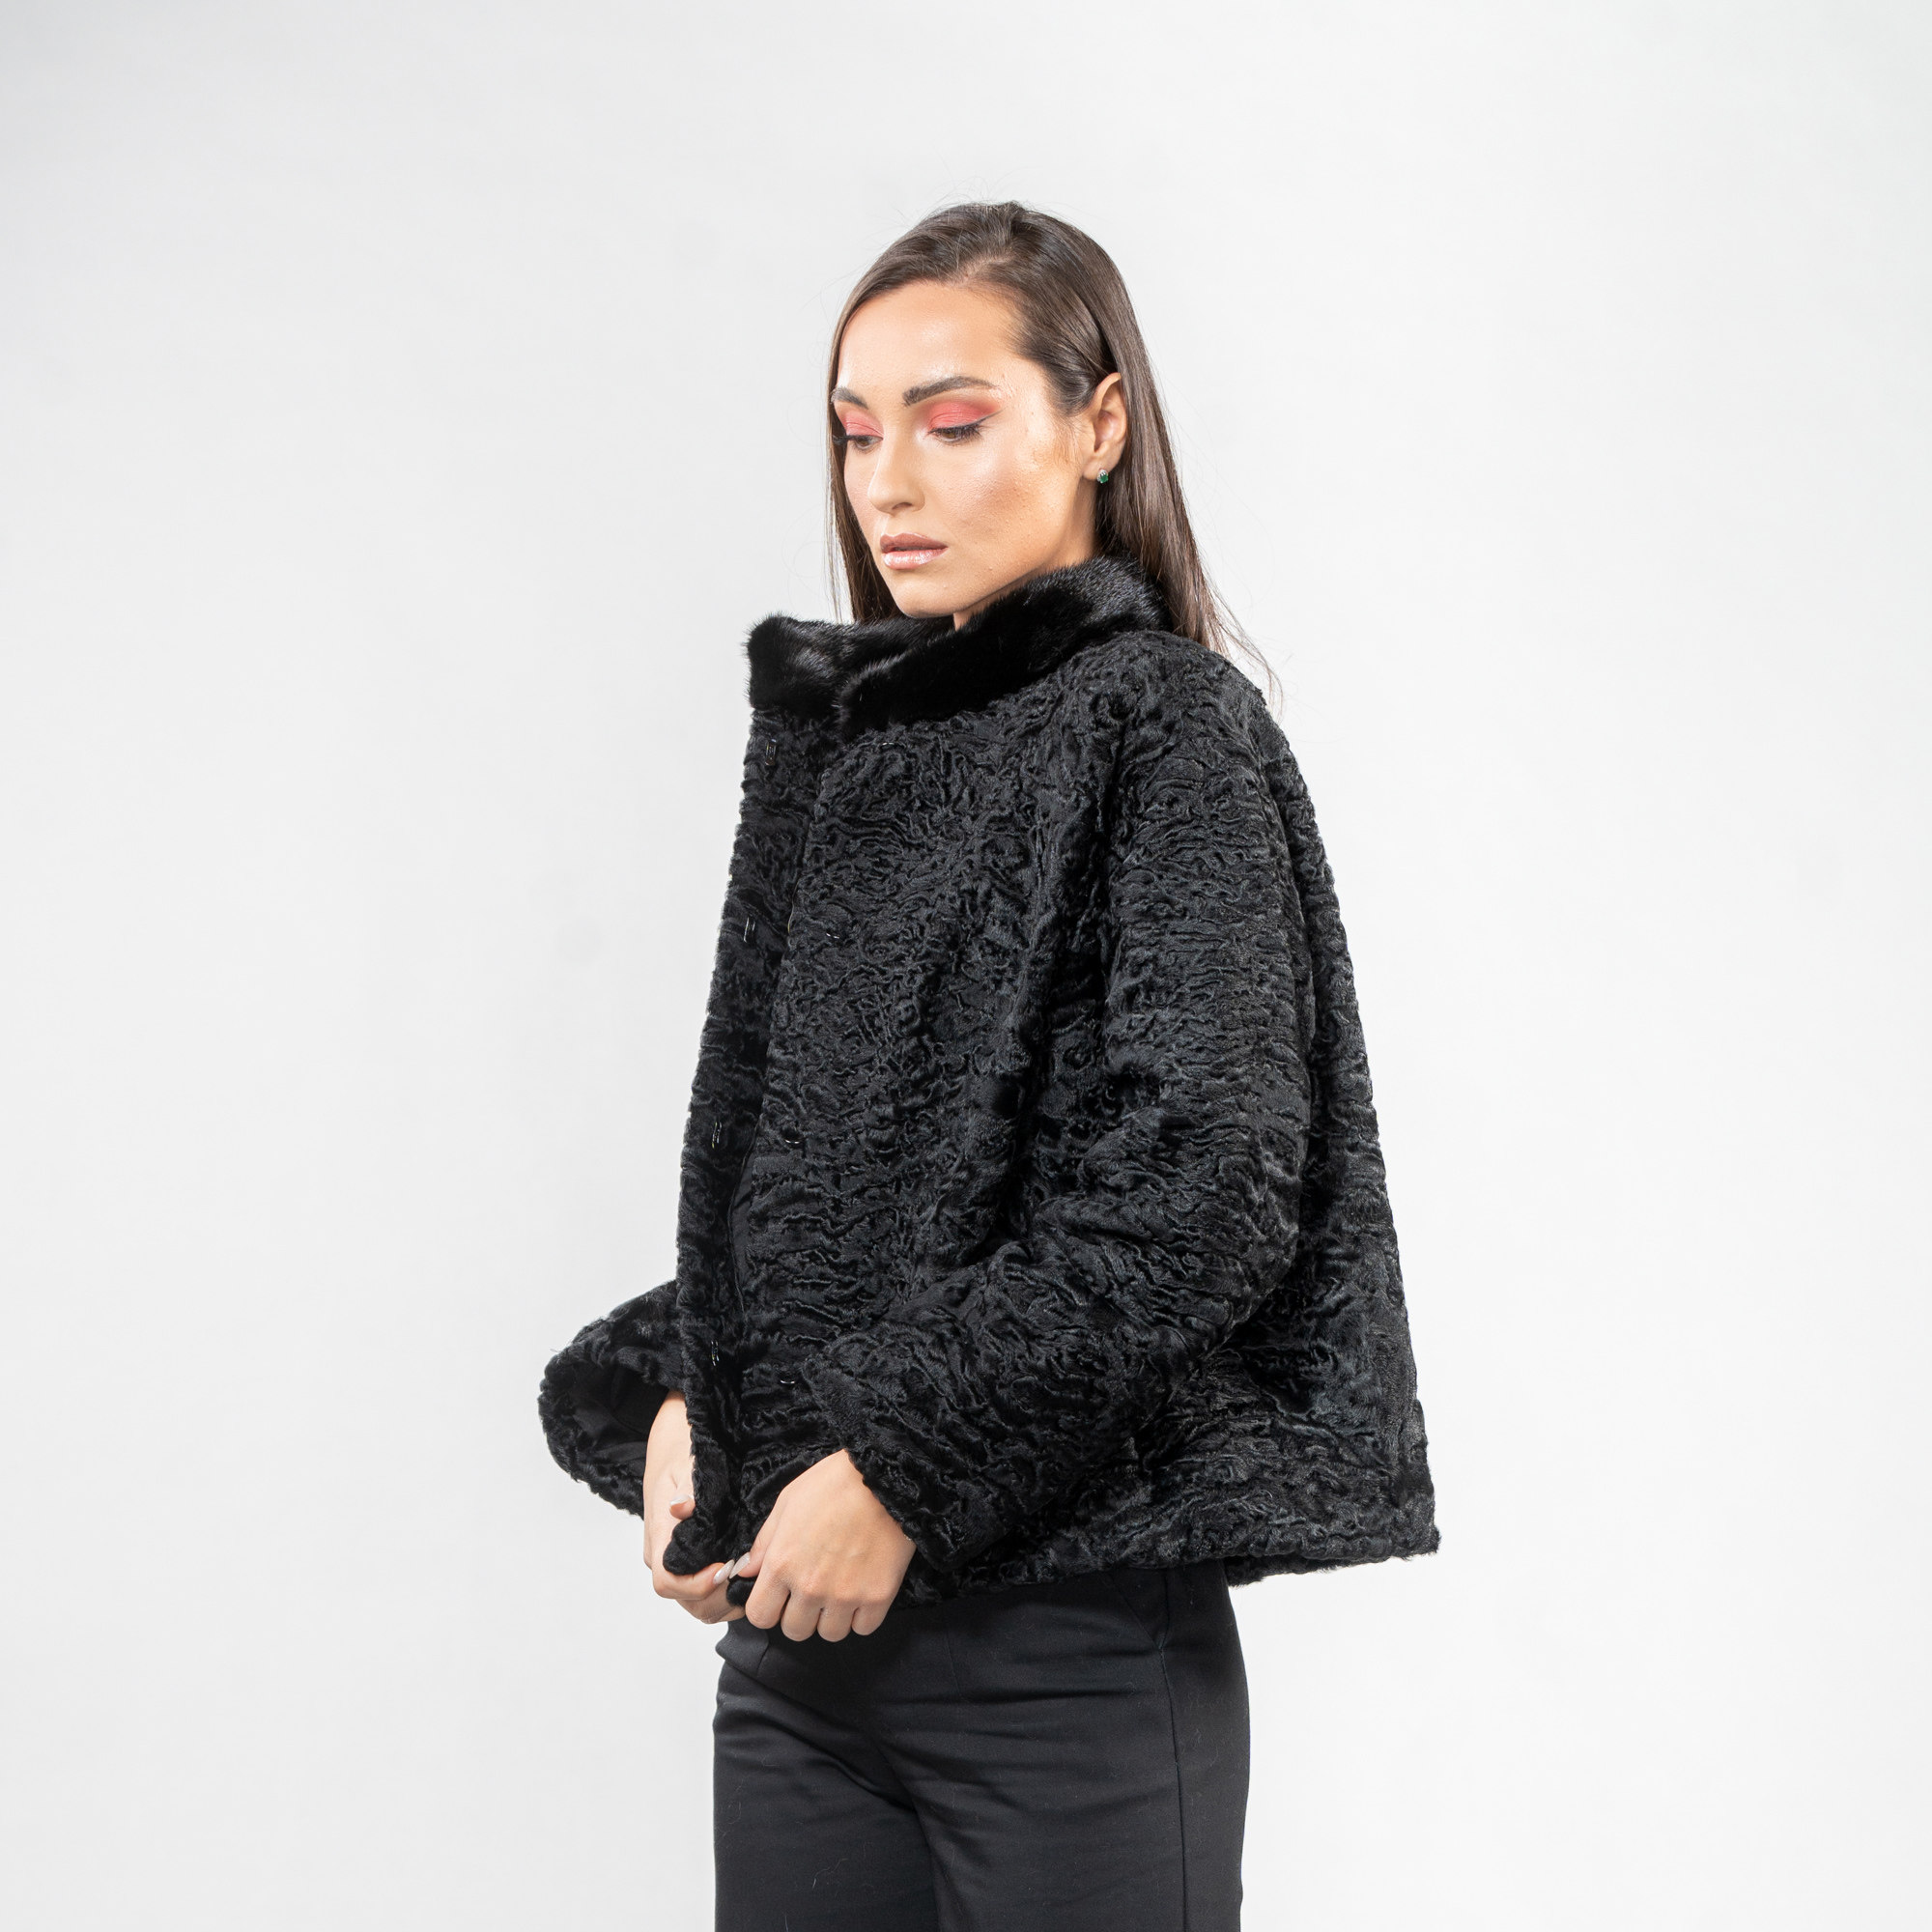 Black Astrakhan fur jacket with mink fur details